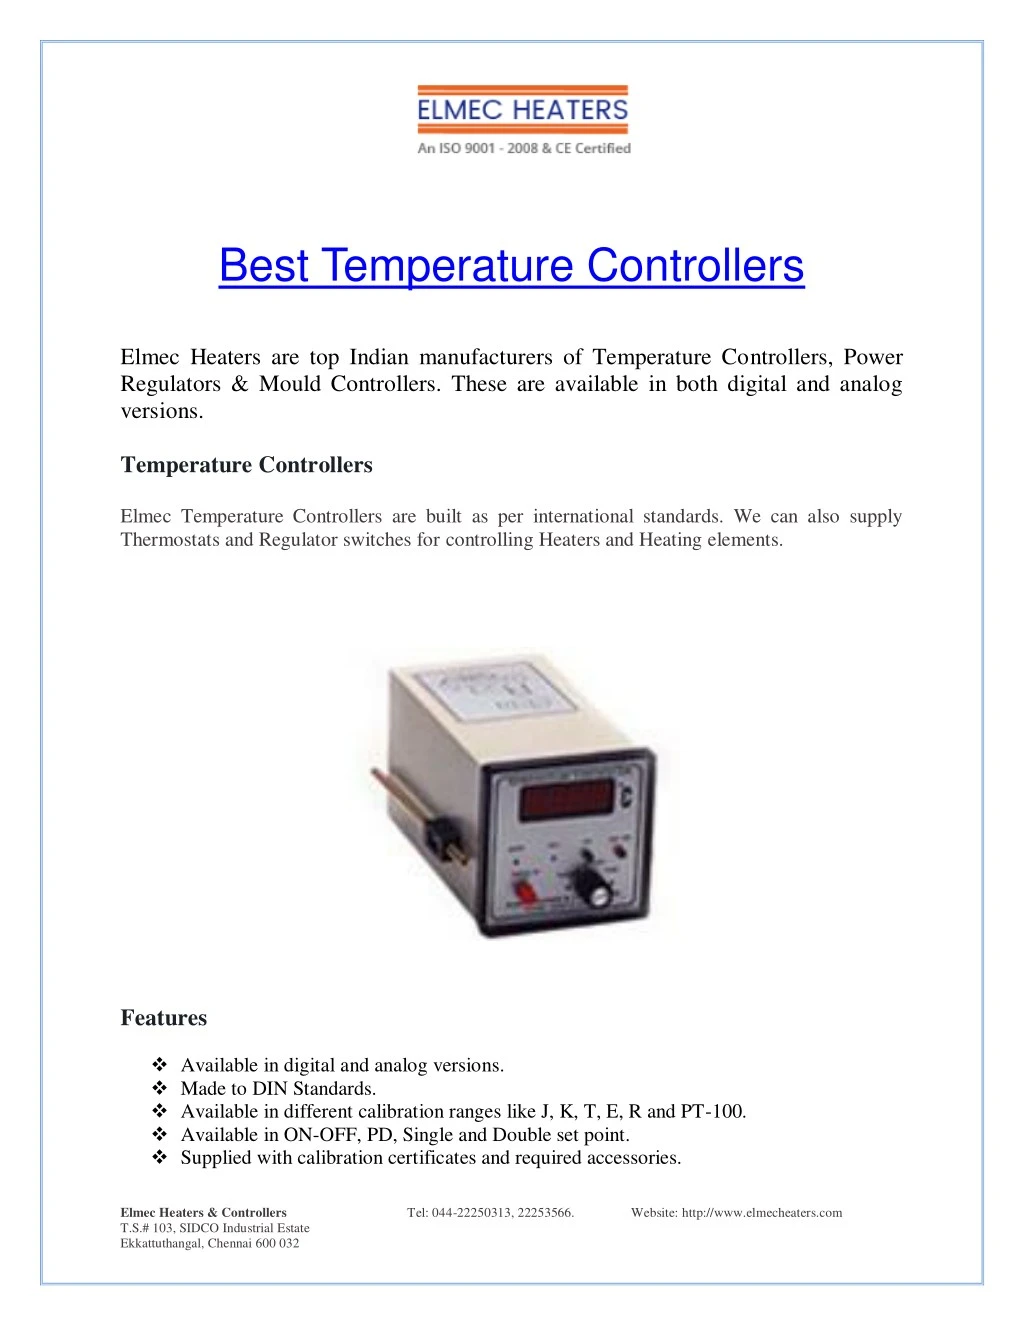 best temperature controllers elmec heaters